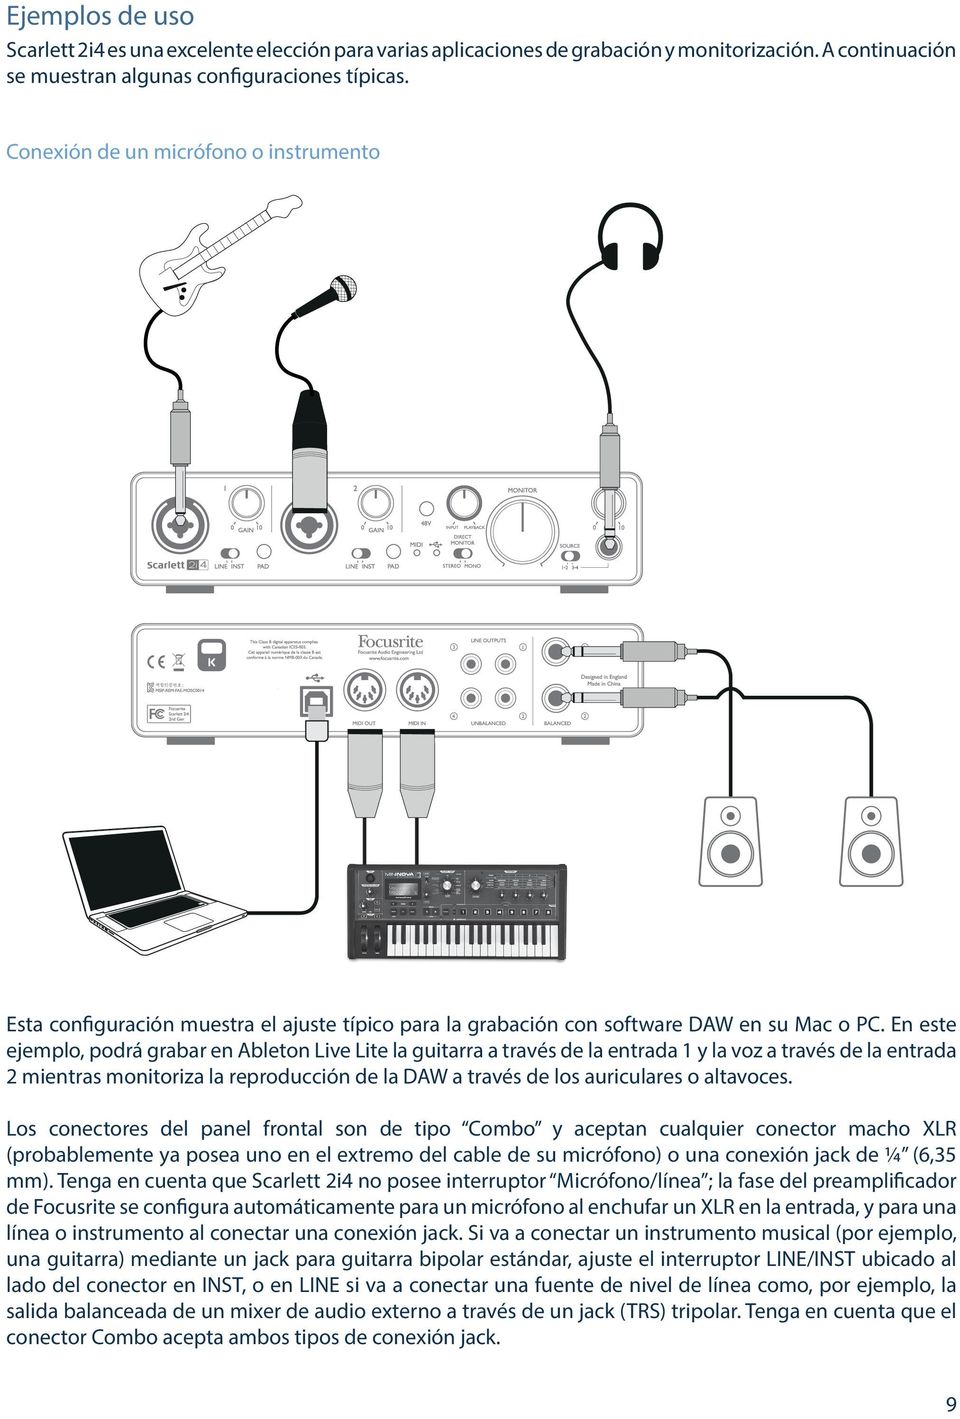 En este ejemplo, podrá grabar en Ableton Live Lite la guitarra a través de la entrada 1 y la voz a través de la entrada 2 mientras monitoriza la reproducción de la DAW a través de los auriculares o